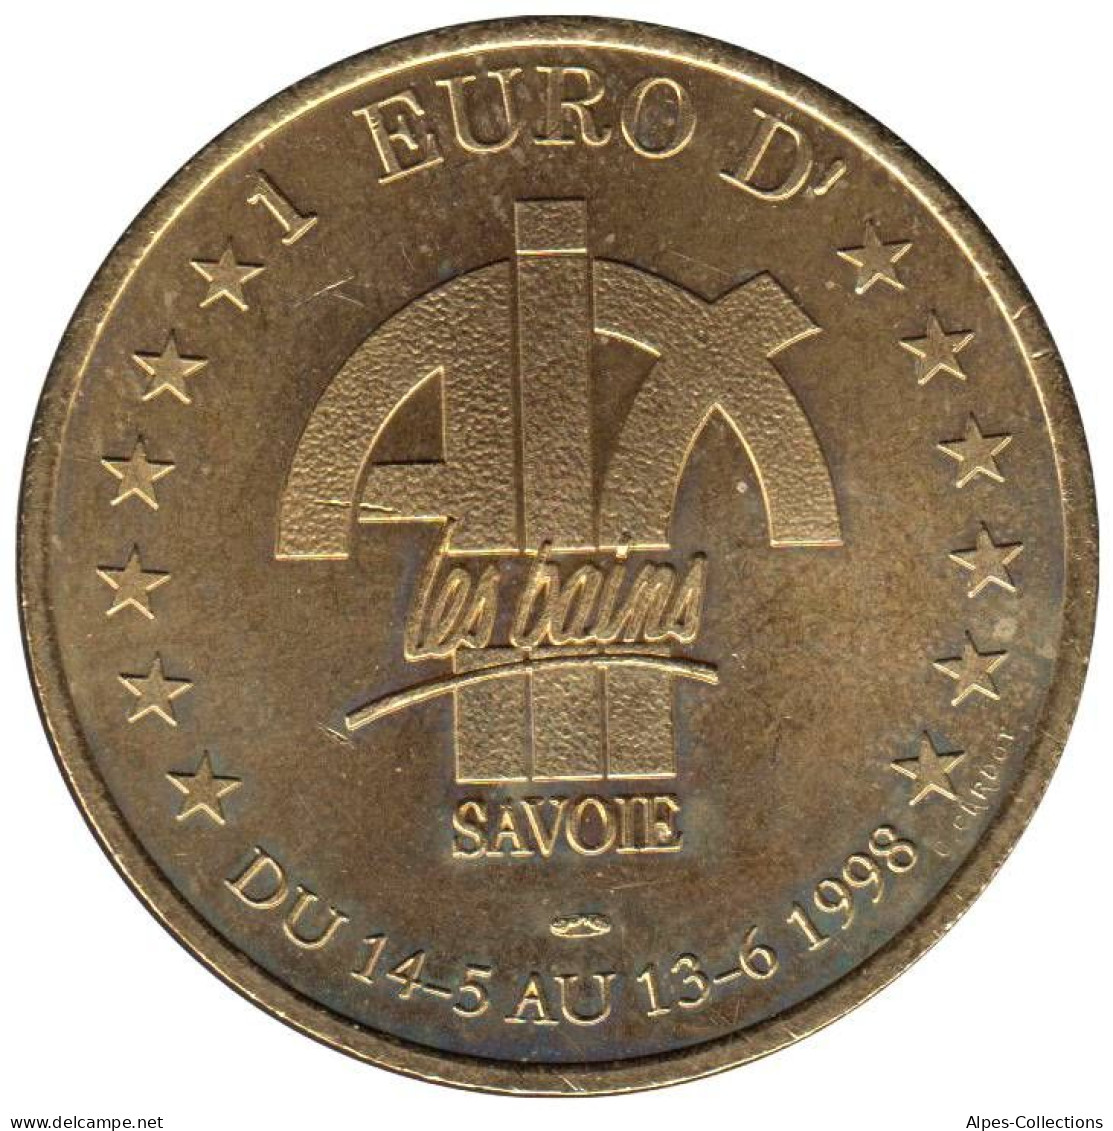 AIX LES BAINS - EU0010.4 - 1 EURO DES VILLES - Réf: T418 - 1998 - Euros Des Villes